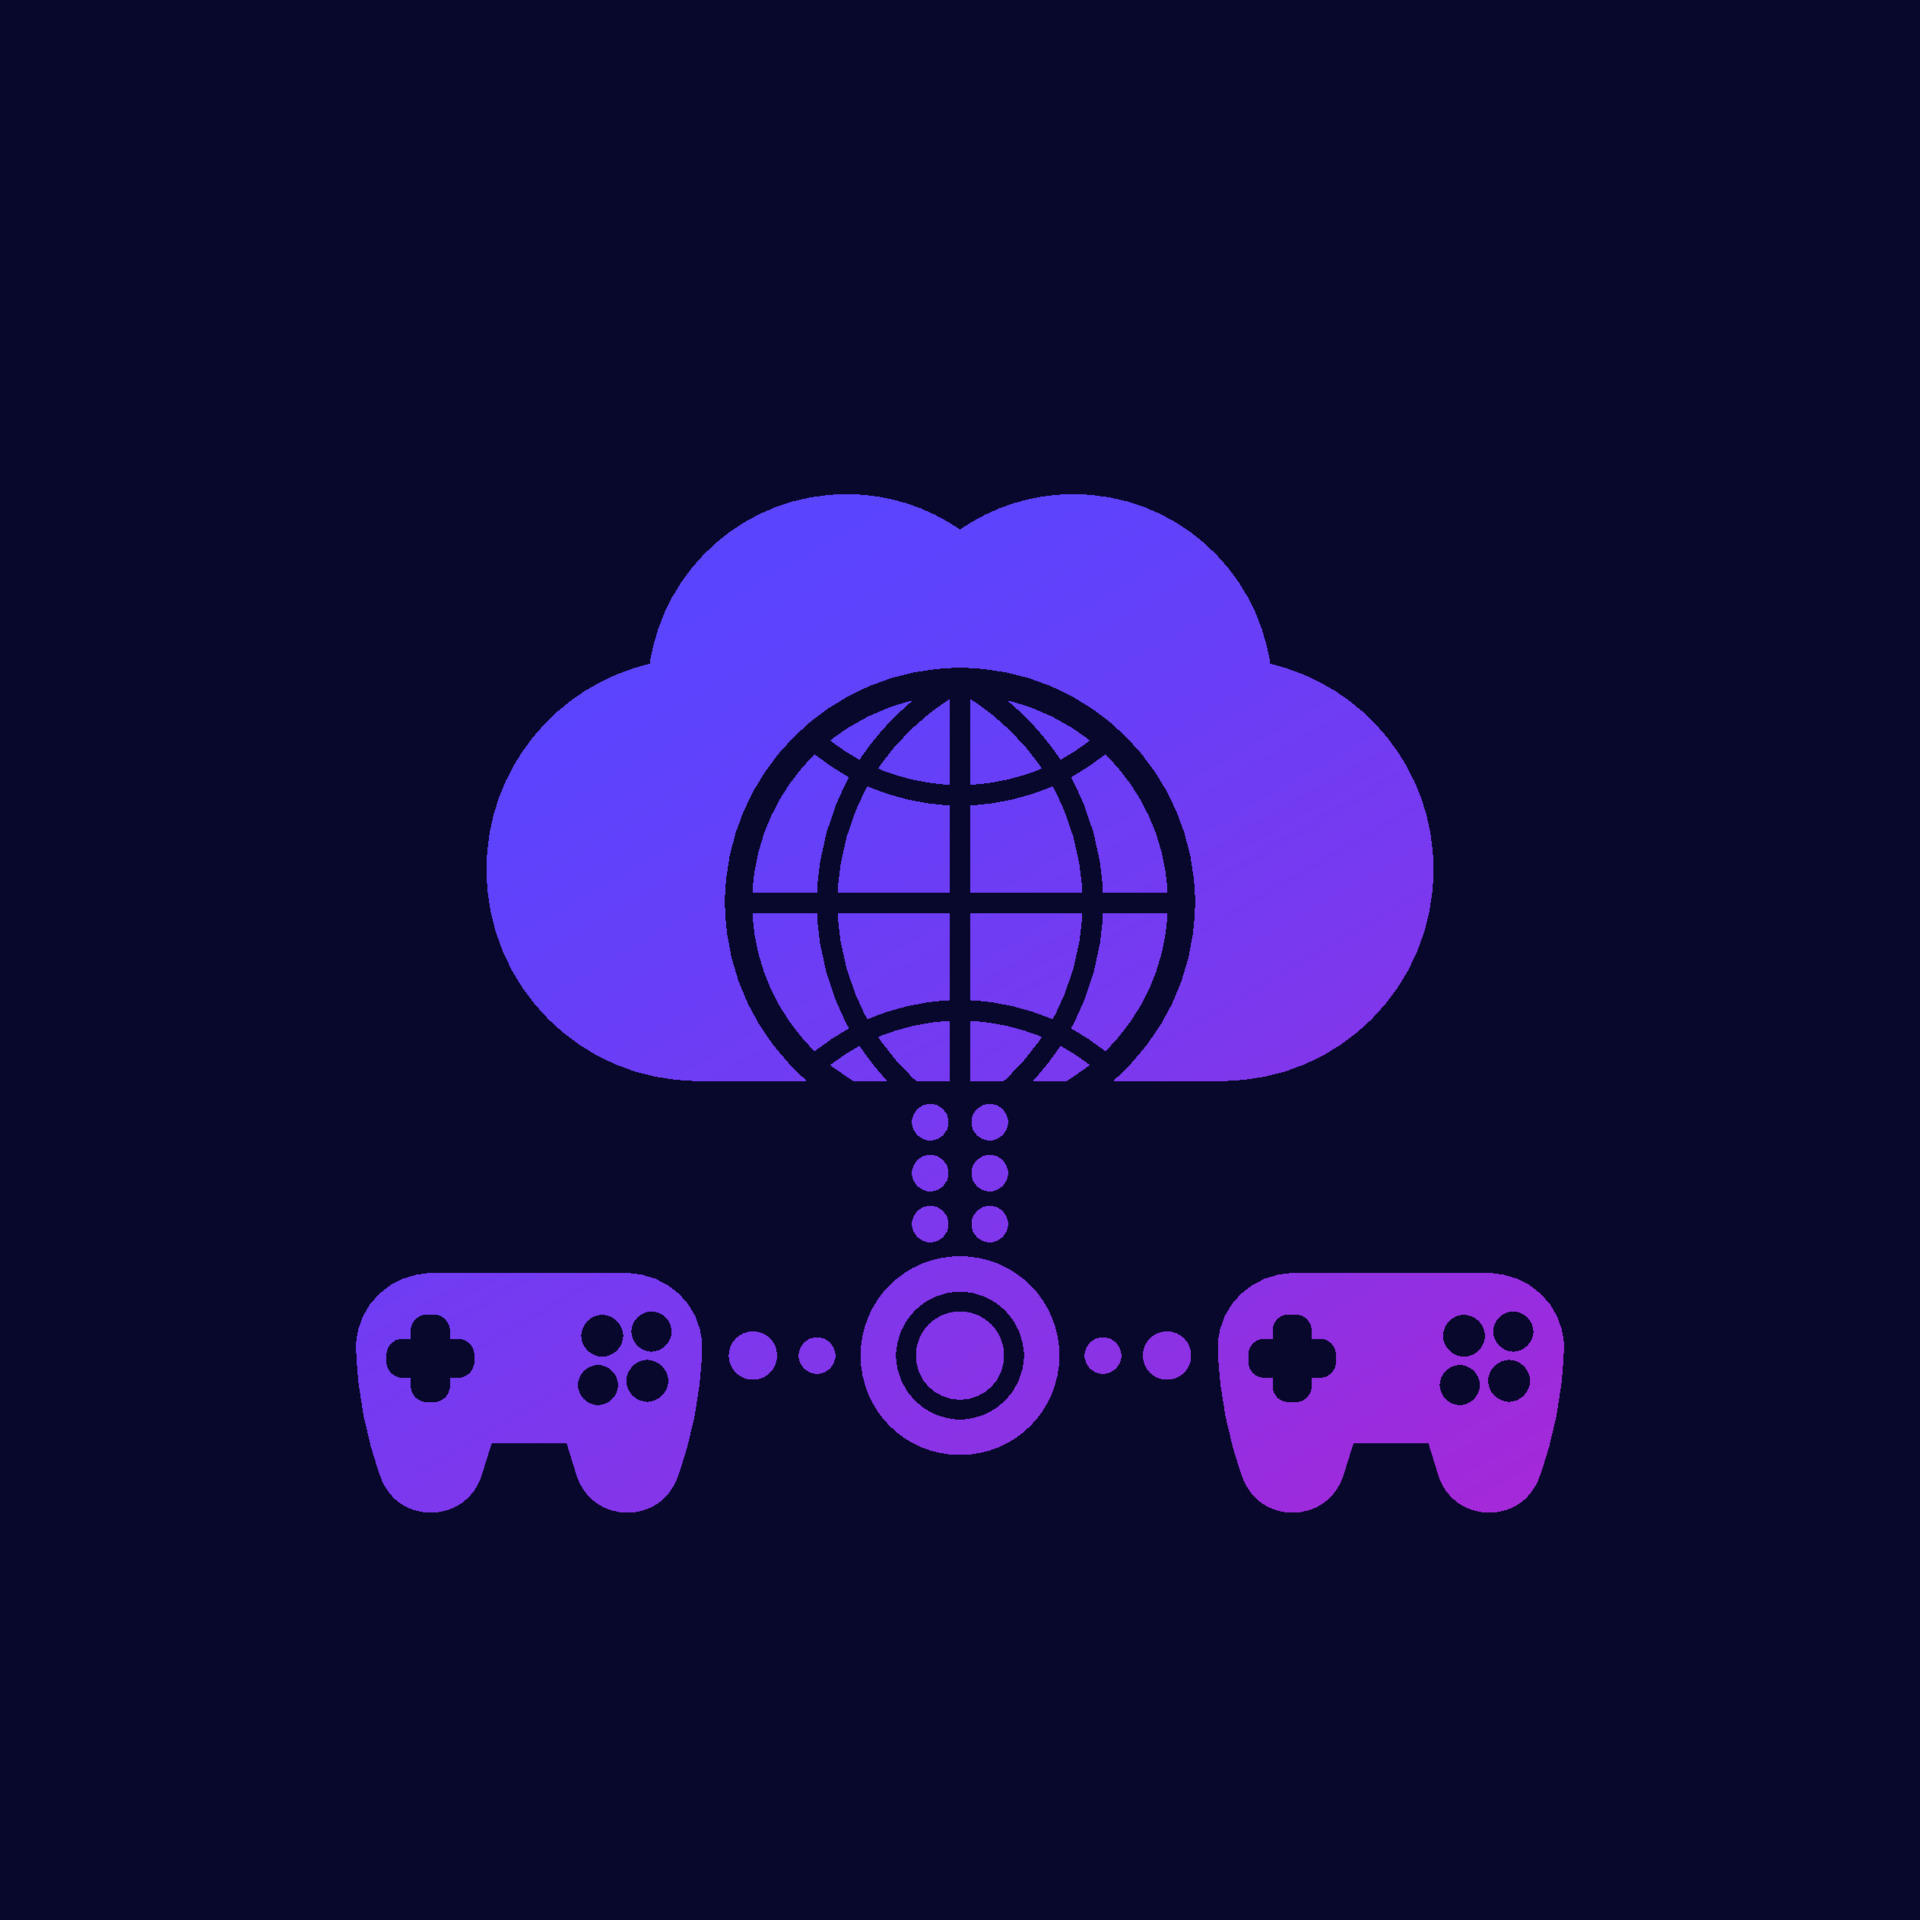 Ícone de jogos em nuvem com controladores de jogo em branco